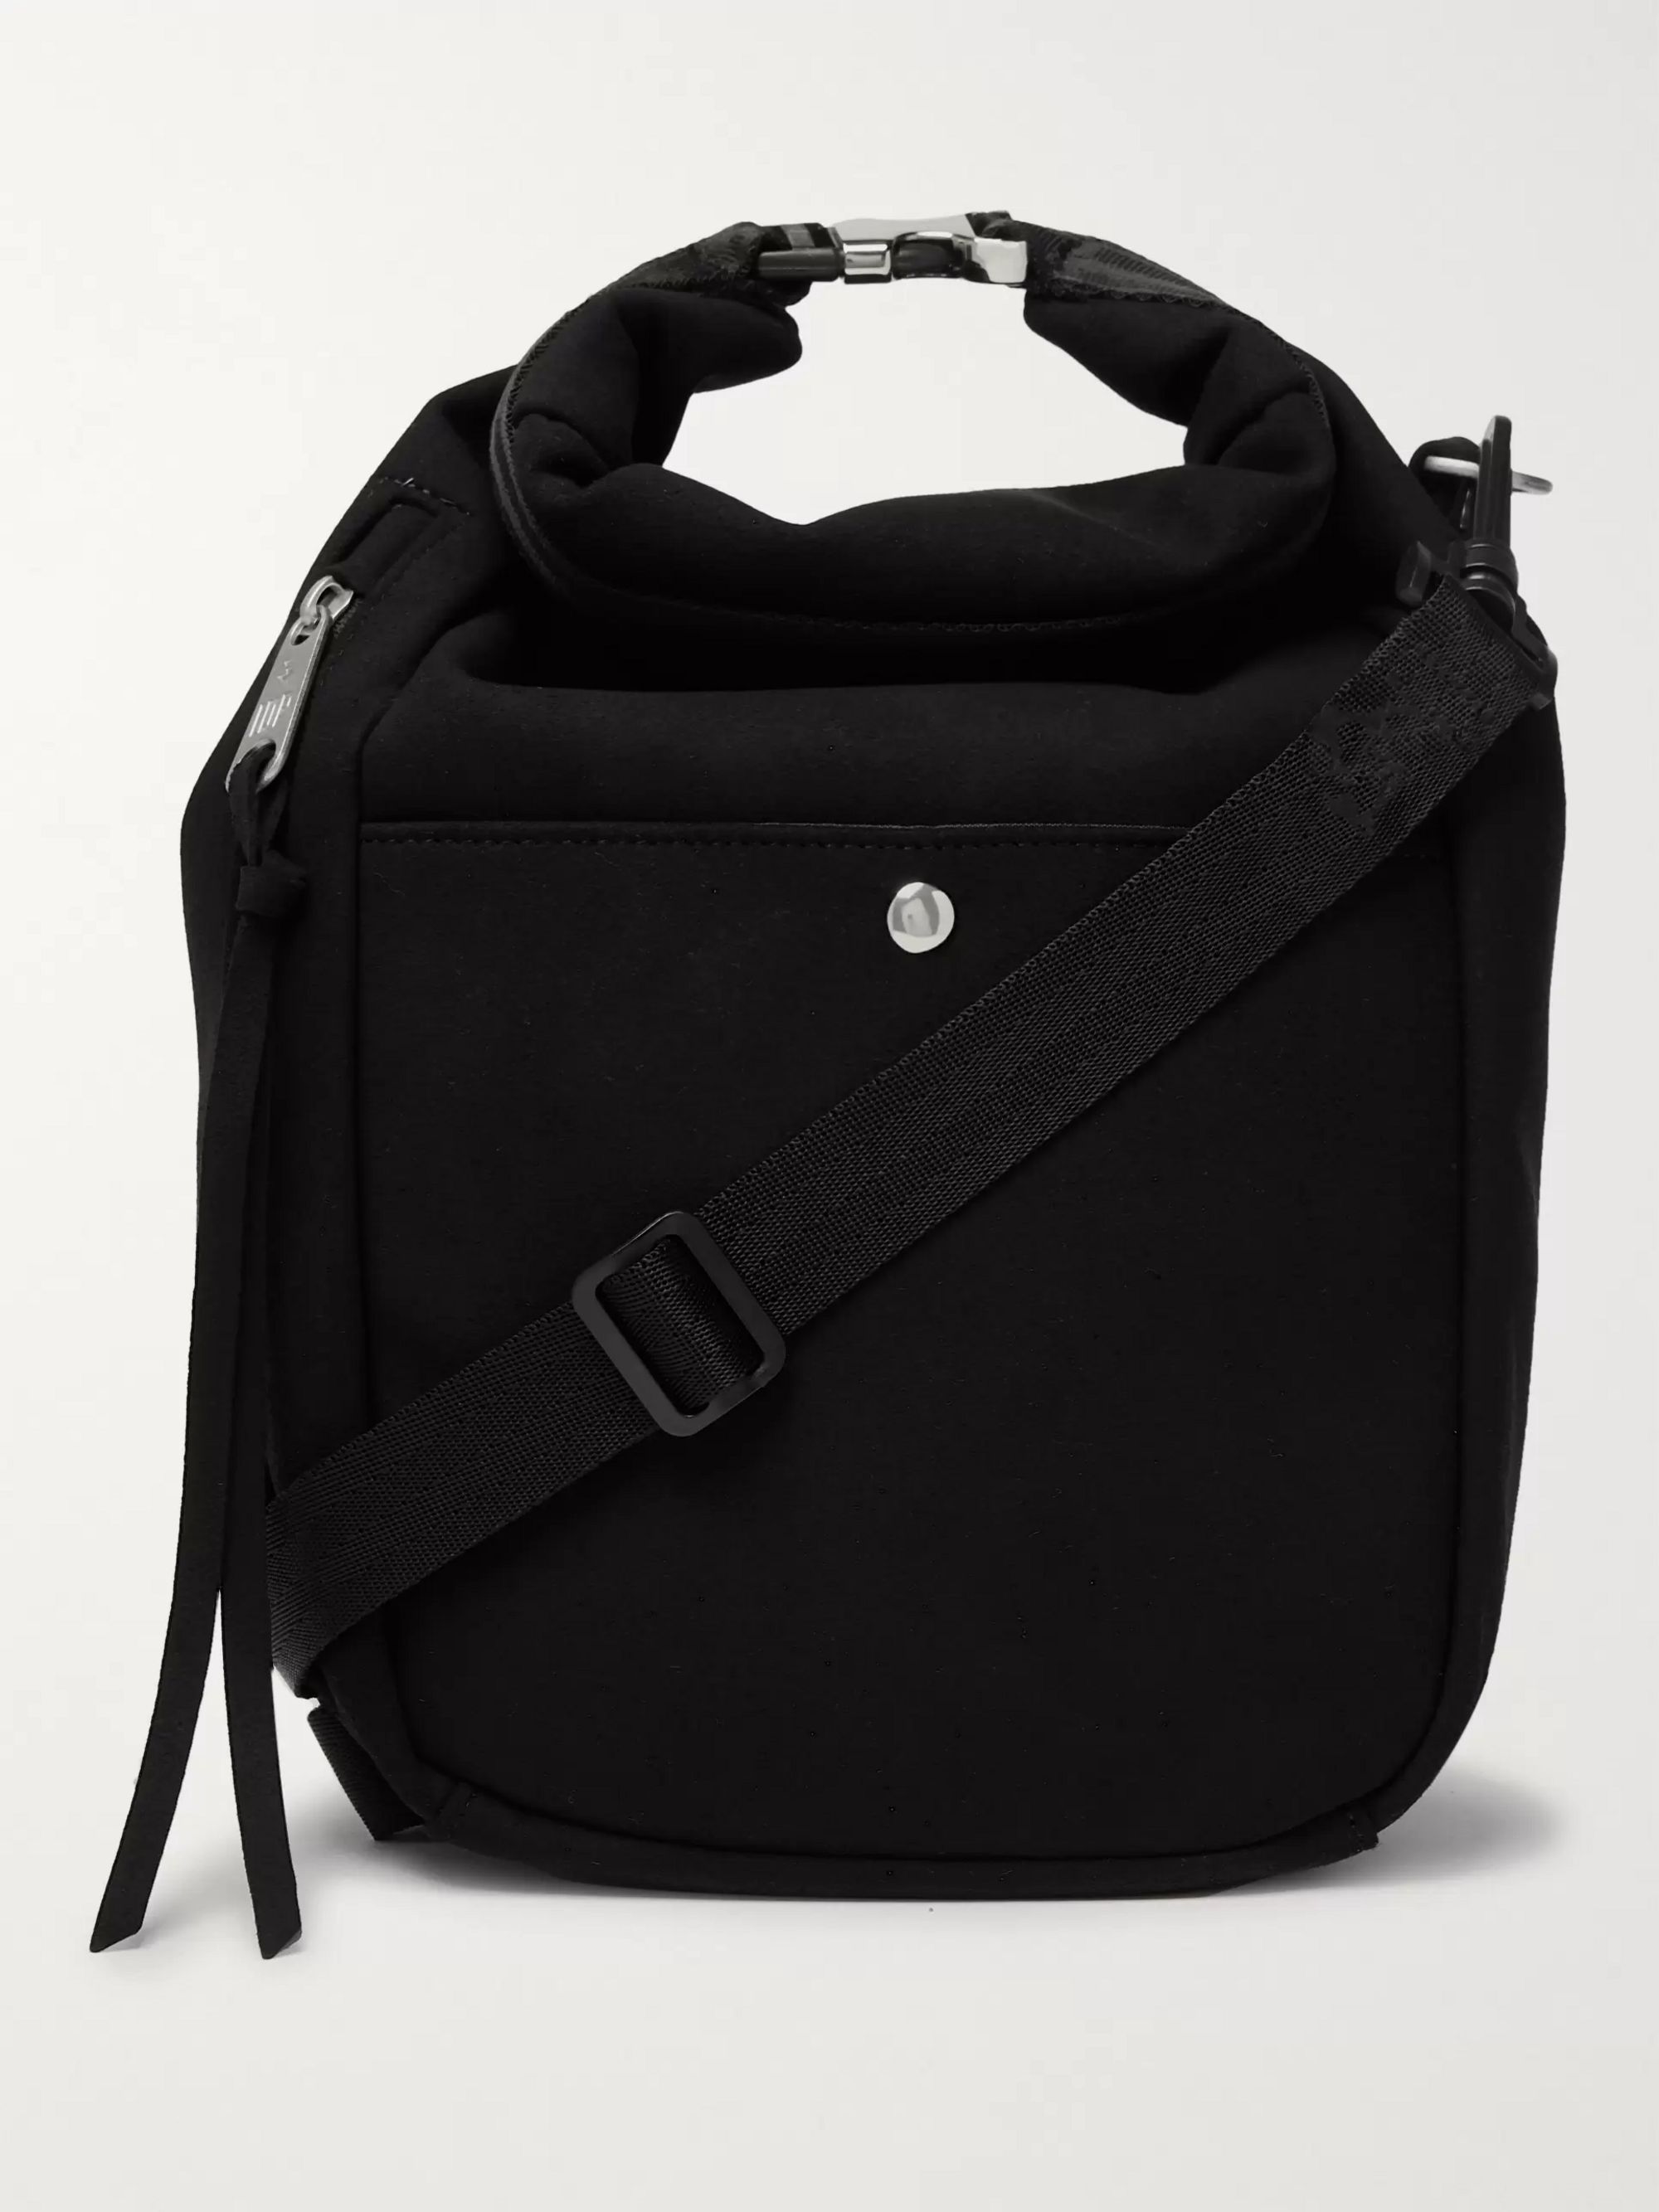 2018 New Womens Shoulder Bag Messenger Bag Personality Robot Handbag Black Color : Black, Size : 20.5820.5CM